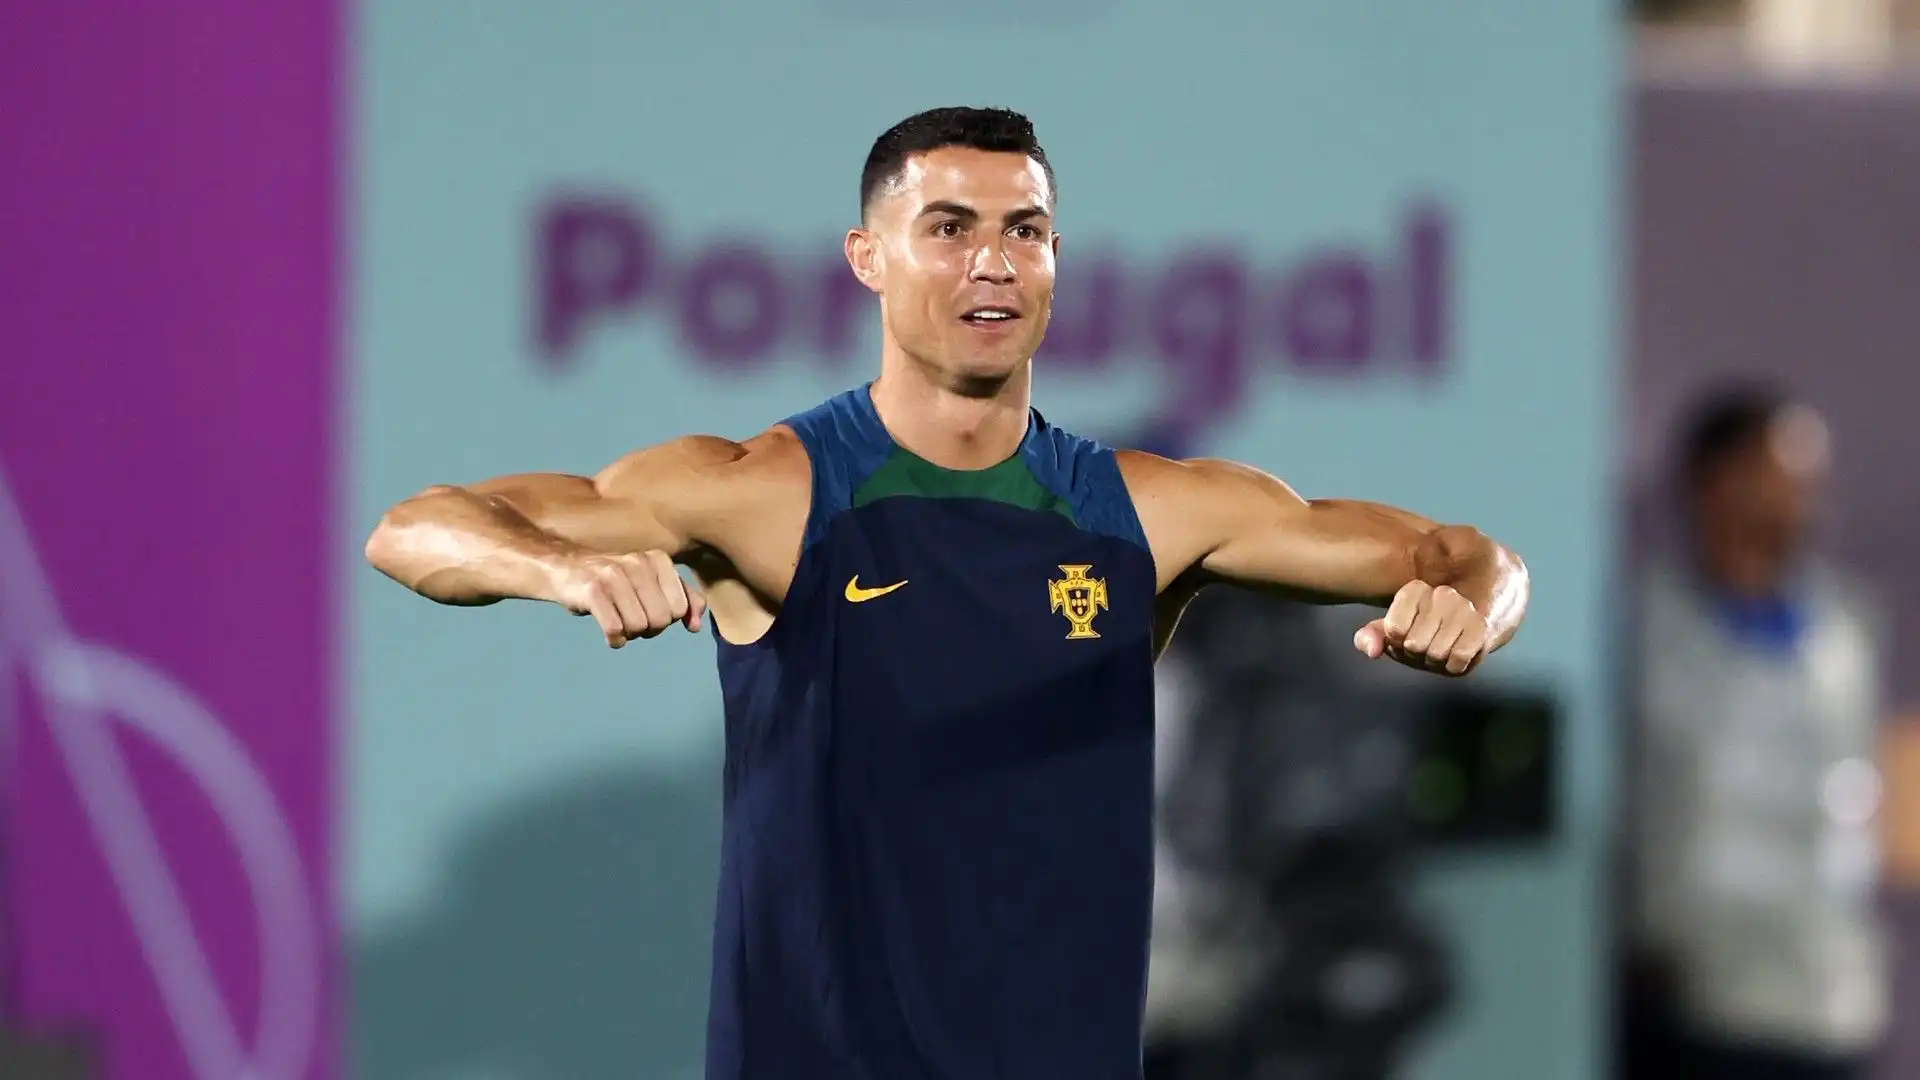 Cristiano Ronaldo è pazzesco: le foto dei muscoli sono incredibili